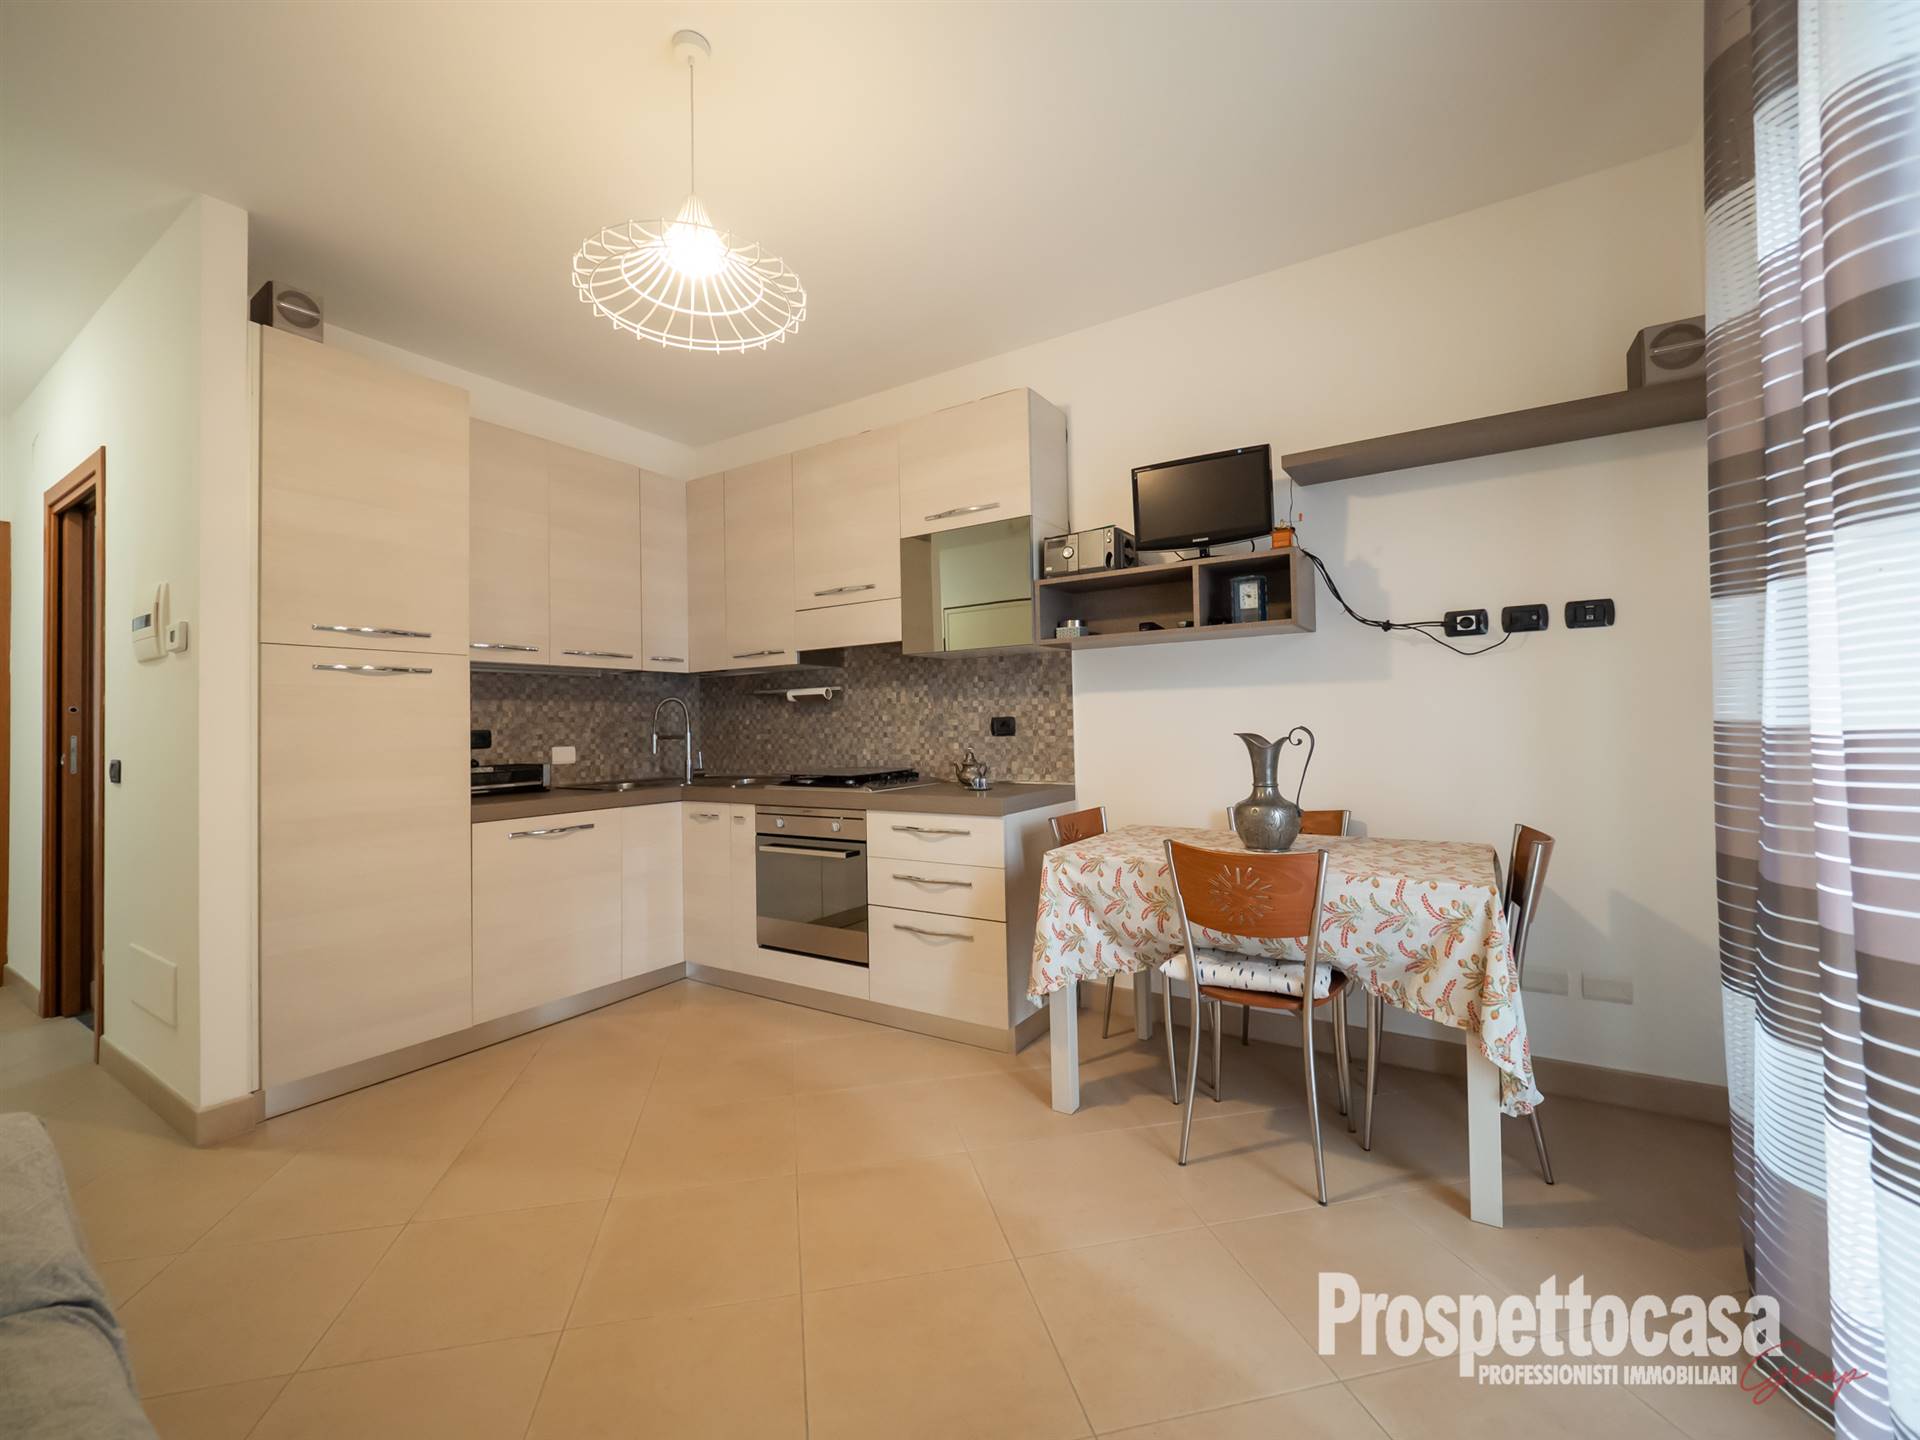 Appartamento in vendita a Trezzano sul Naviglio, 2 locali, prezzo € 200.000 | PortaleAgenzieImmobiliari.it